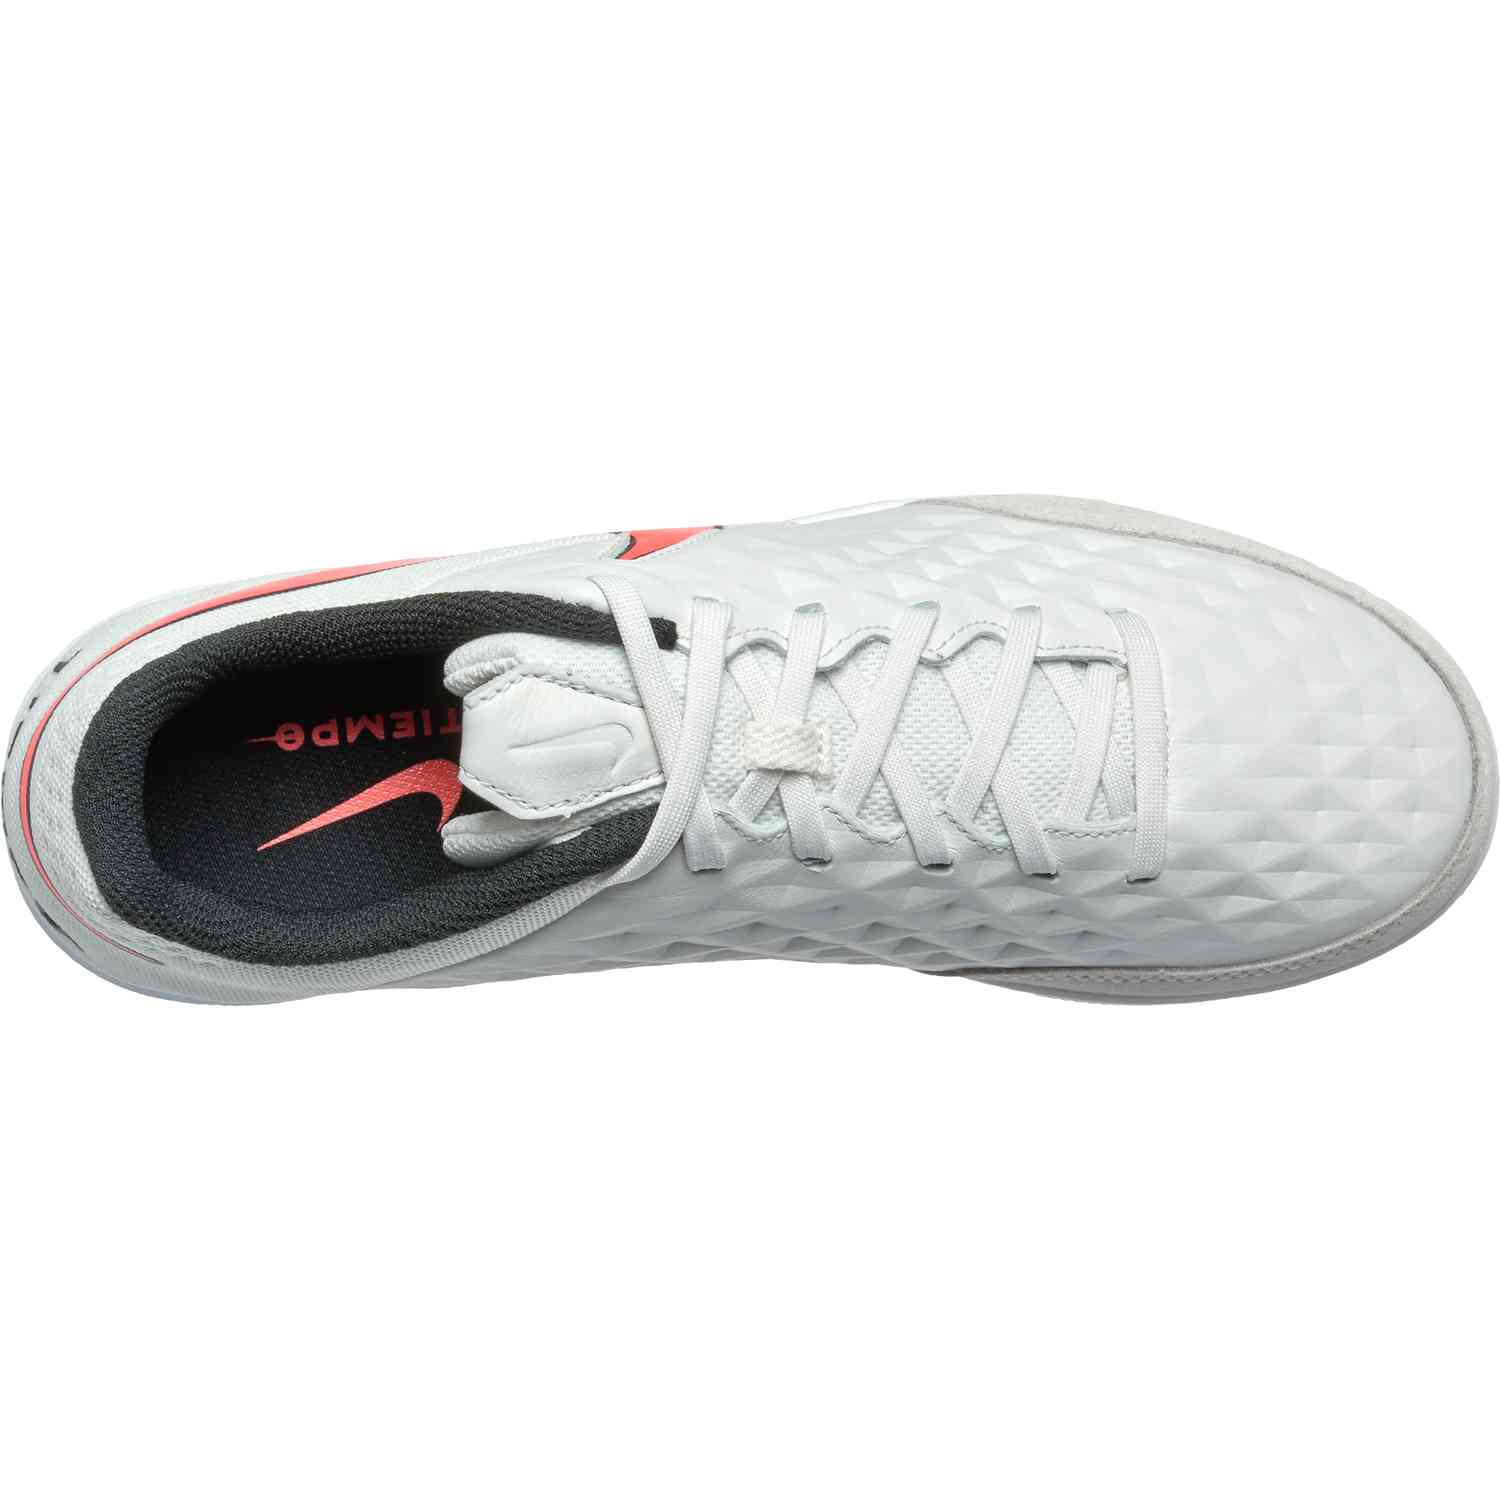 Nike Tiempo Genio II Leather TF 819216 001 r. 45.5 Allegro